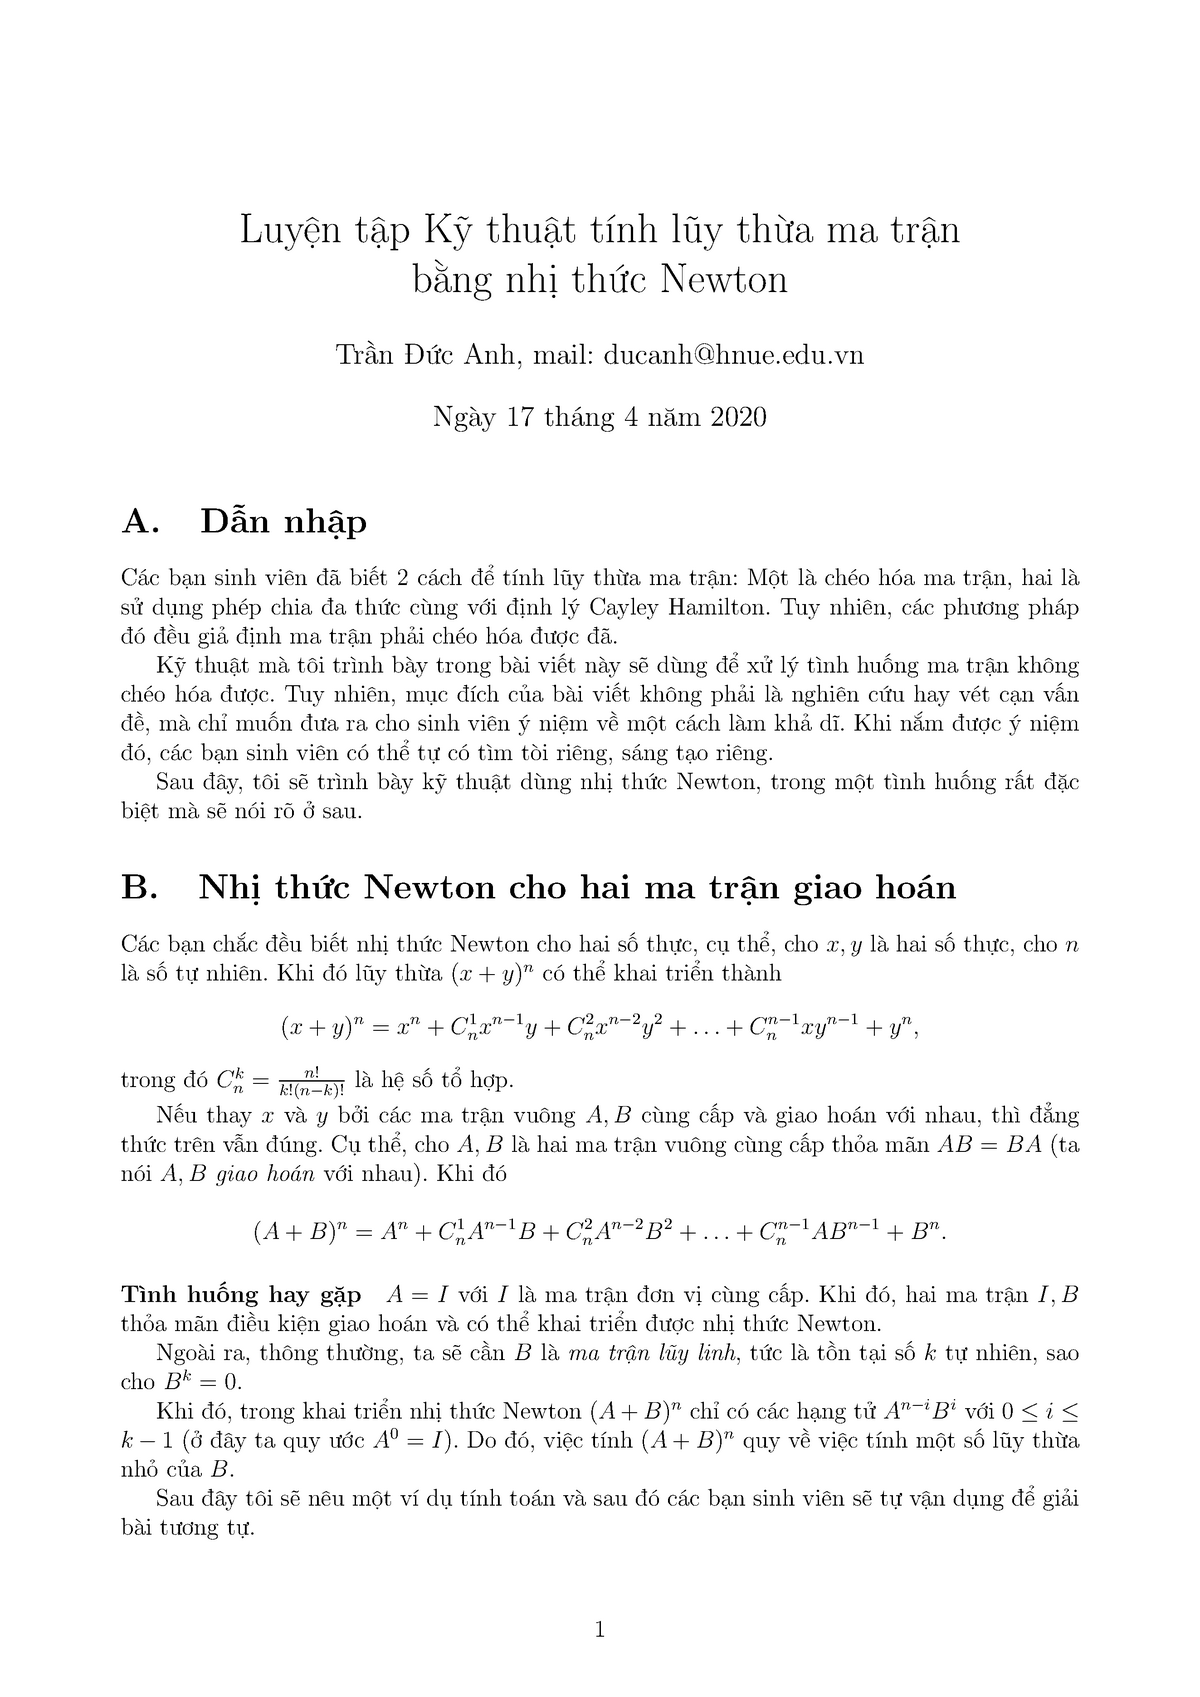 Tại sao việc tính toán nhị thức Newton quan trọng trong các bài toán liên quan đến đại số?